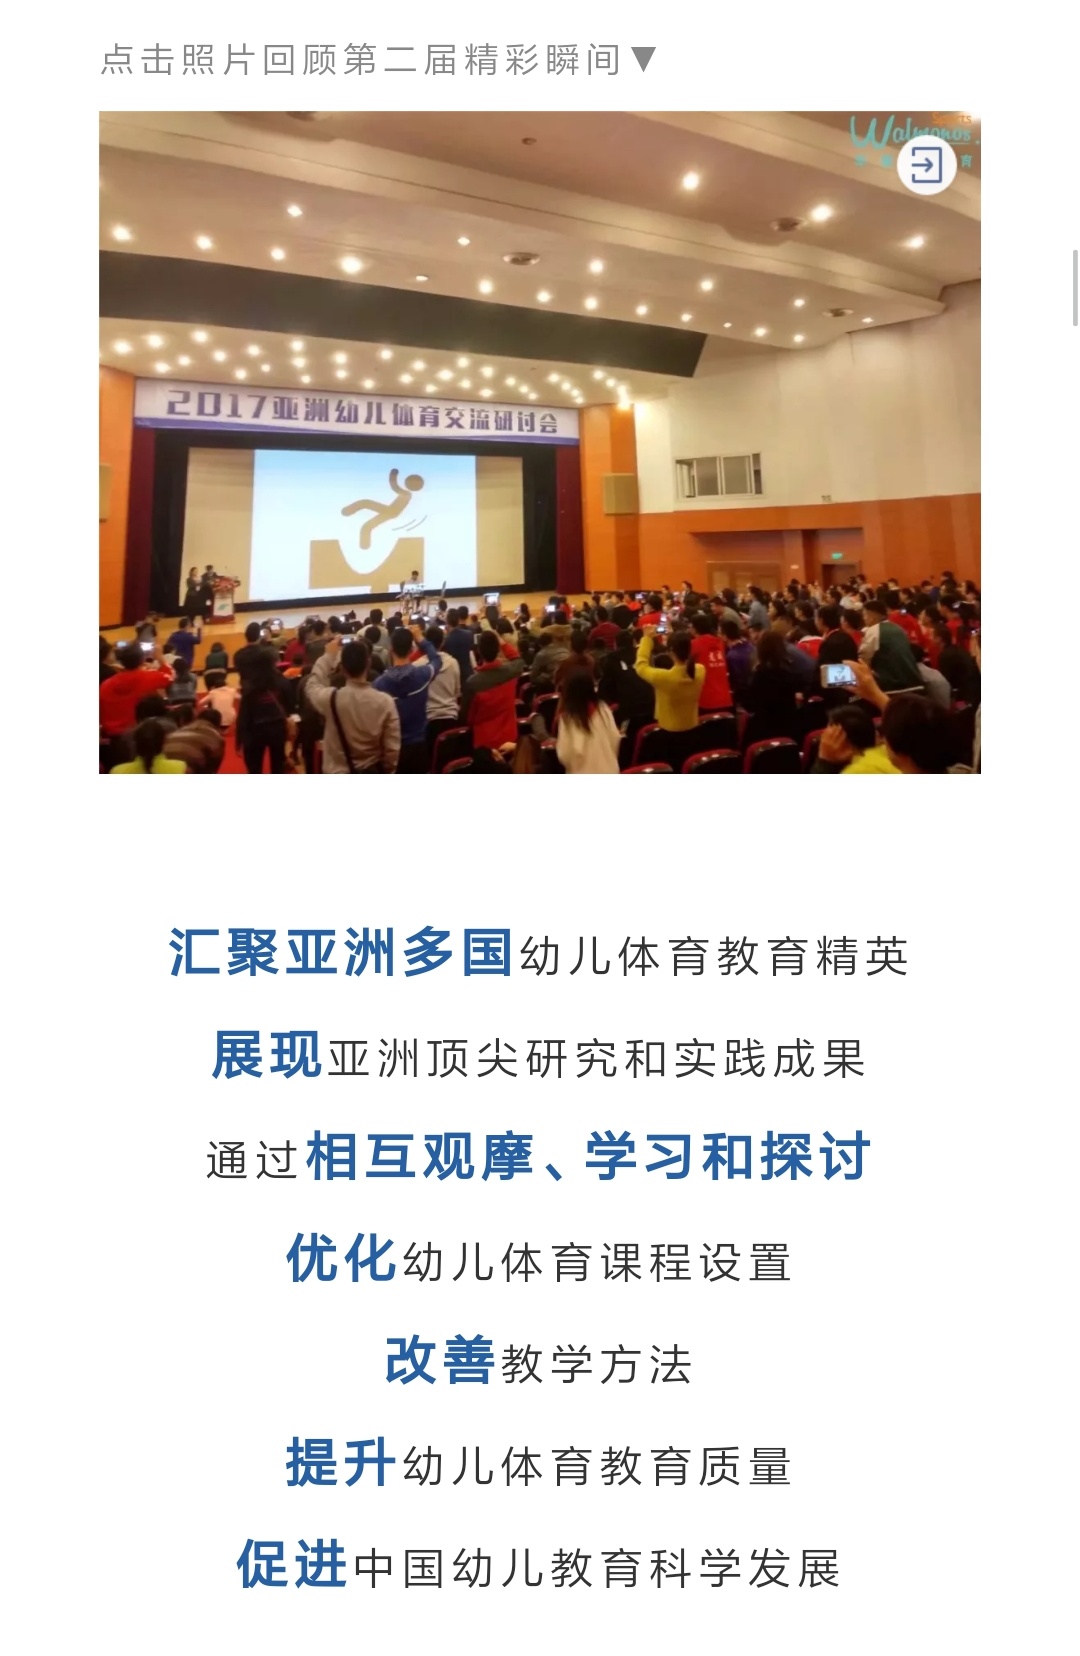 华蒙星第三届亚洲幼儿体育交流研讨会暨2018中国幼儿园男教师论坛（长沙）